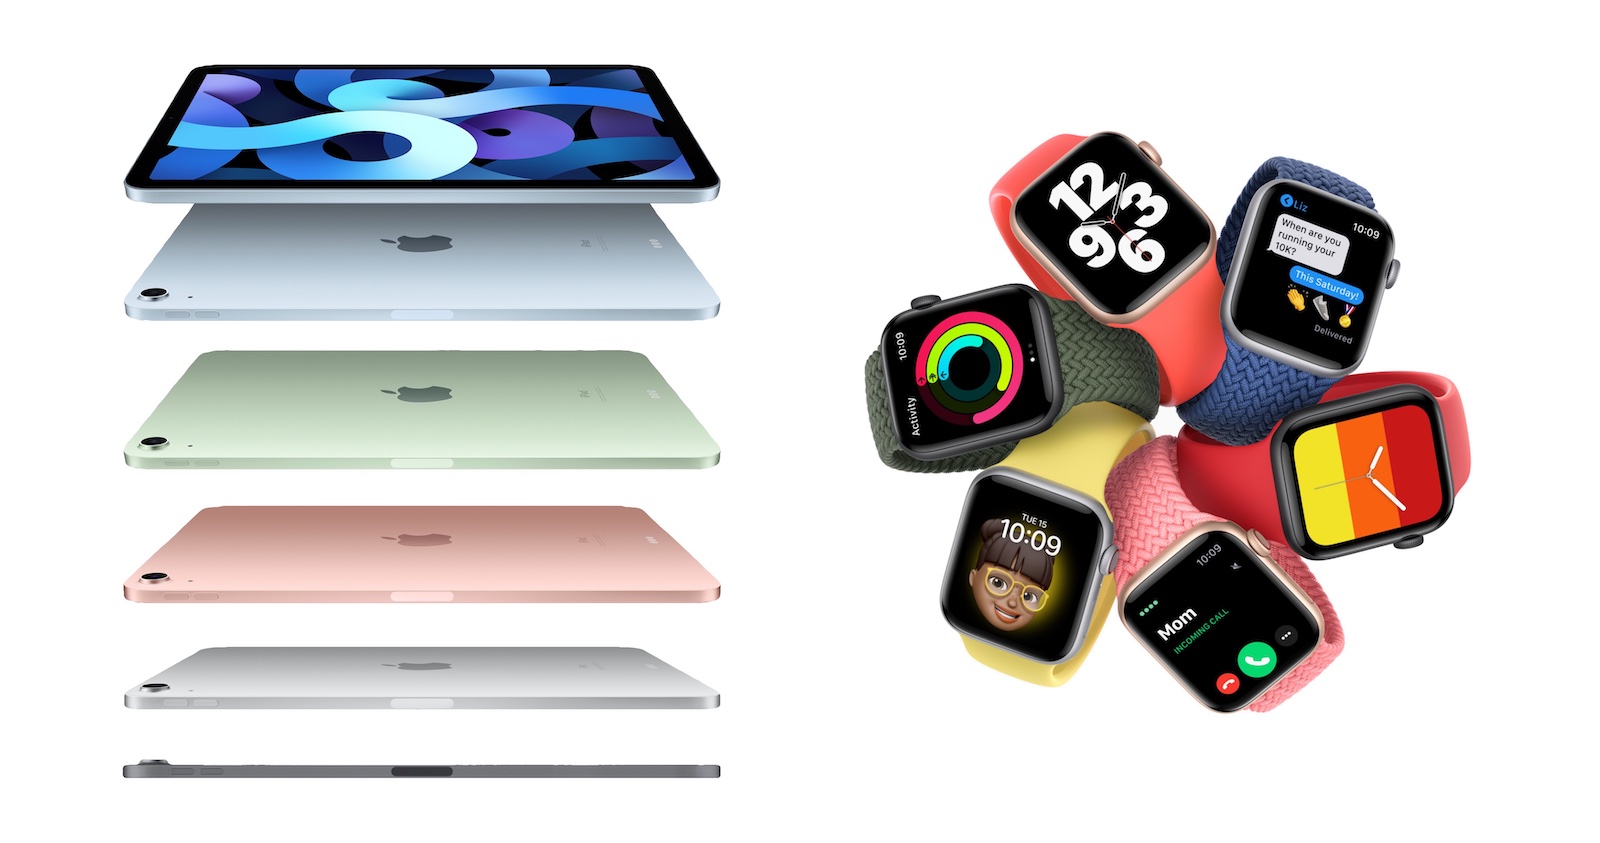 애플, 아이패드 에어4, 아이패드8, 애플워치6, 애플워치SE, Apple One 발표 - 플랜김